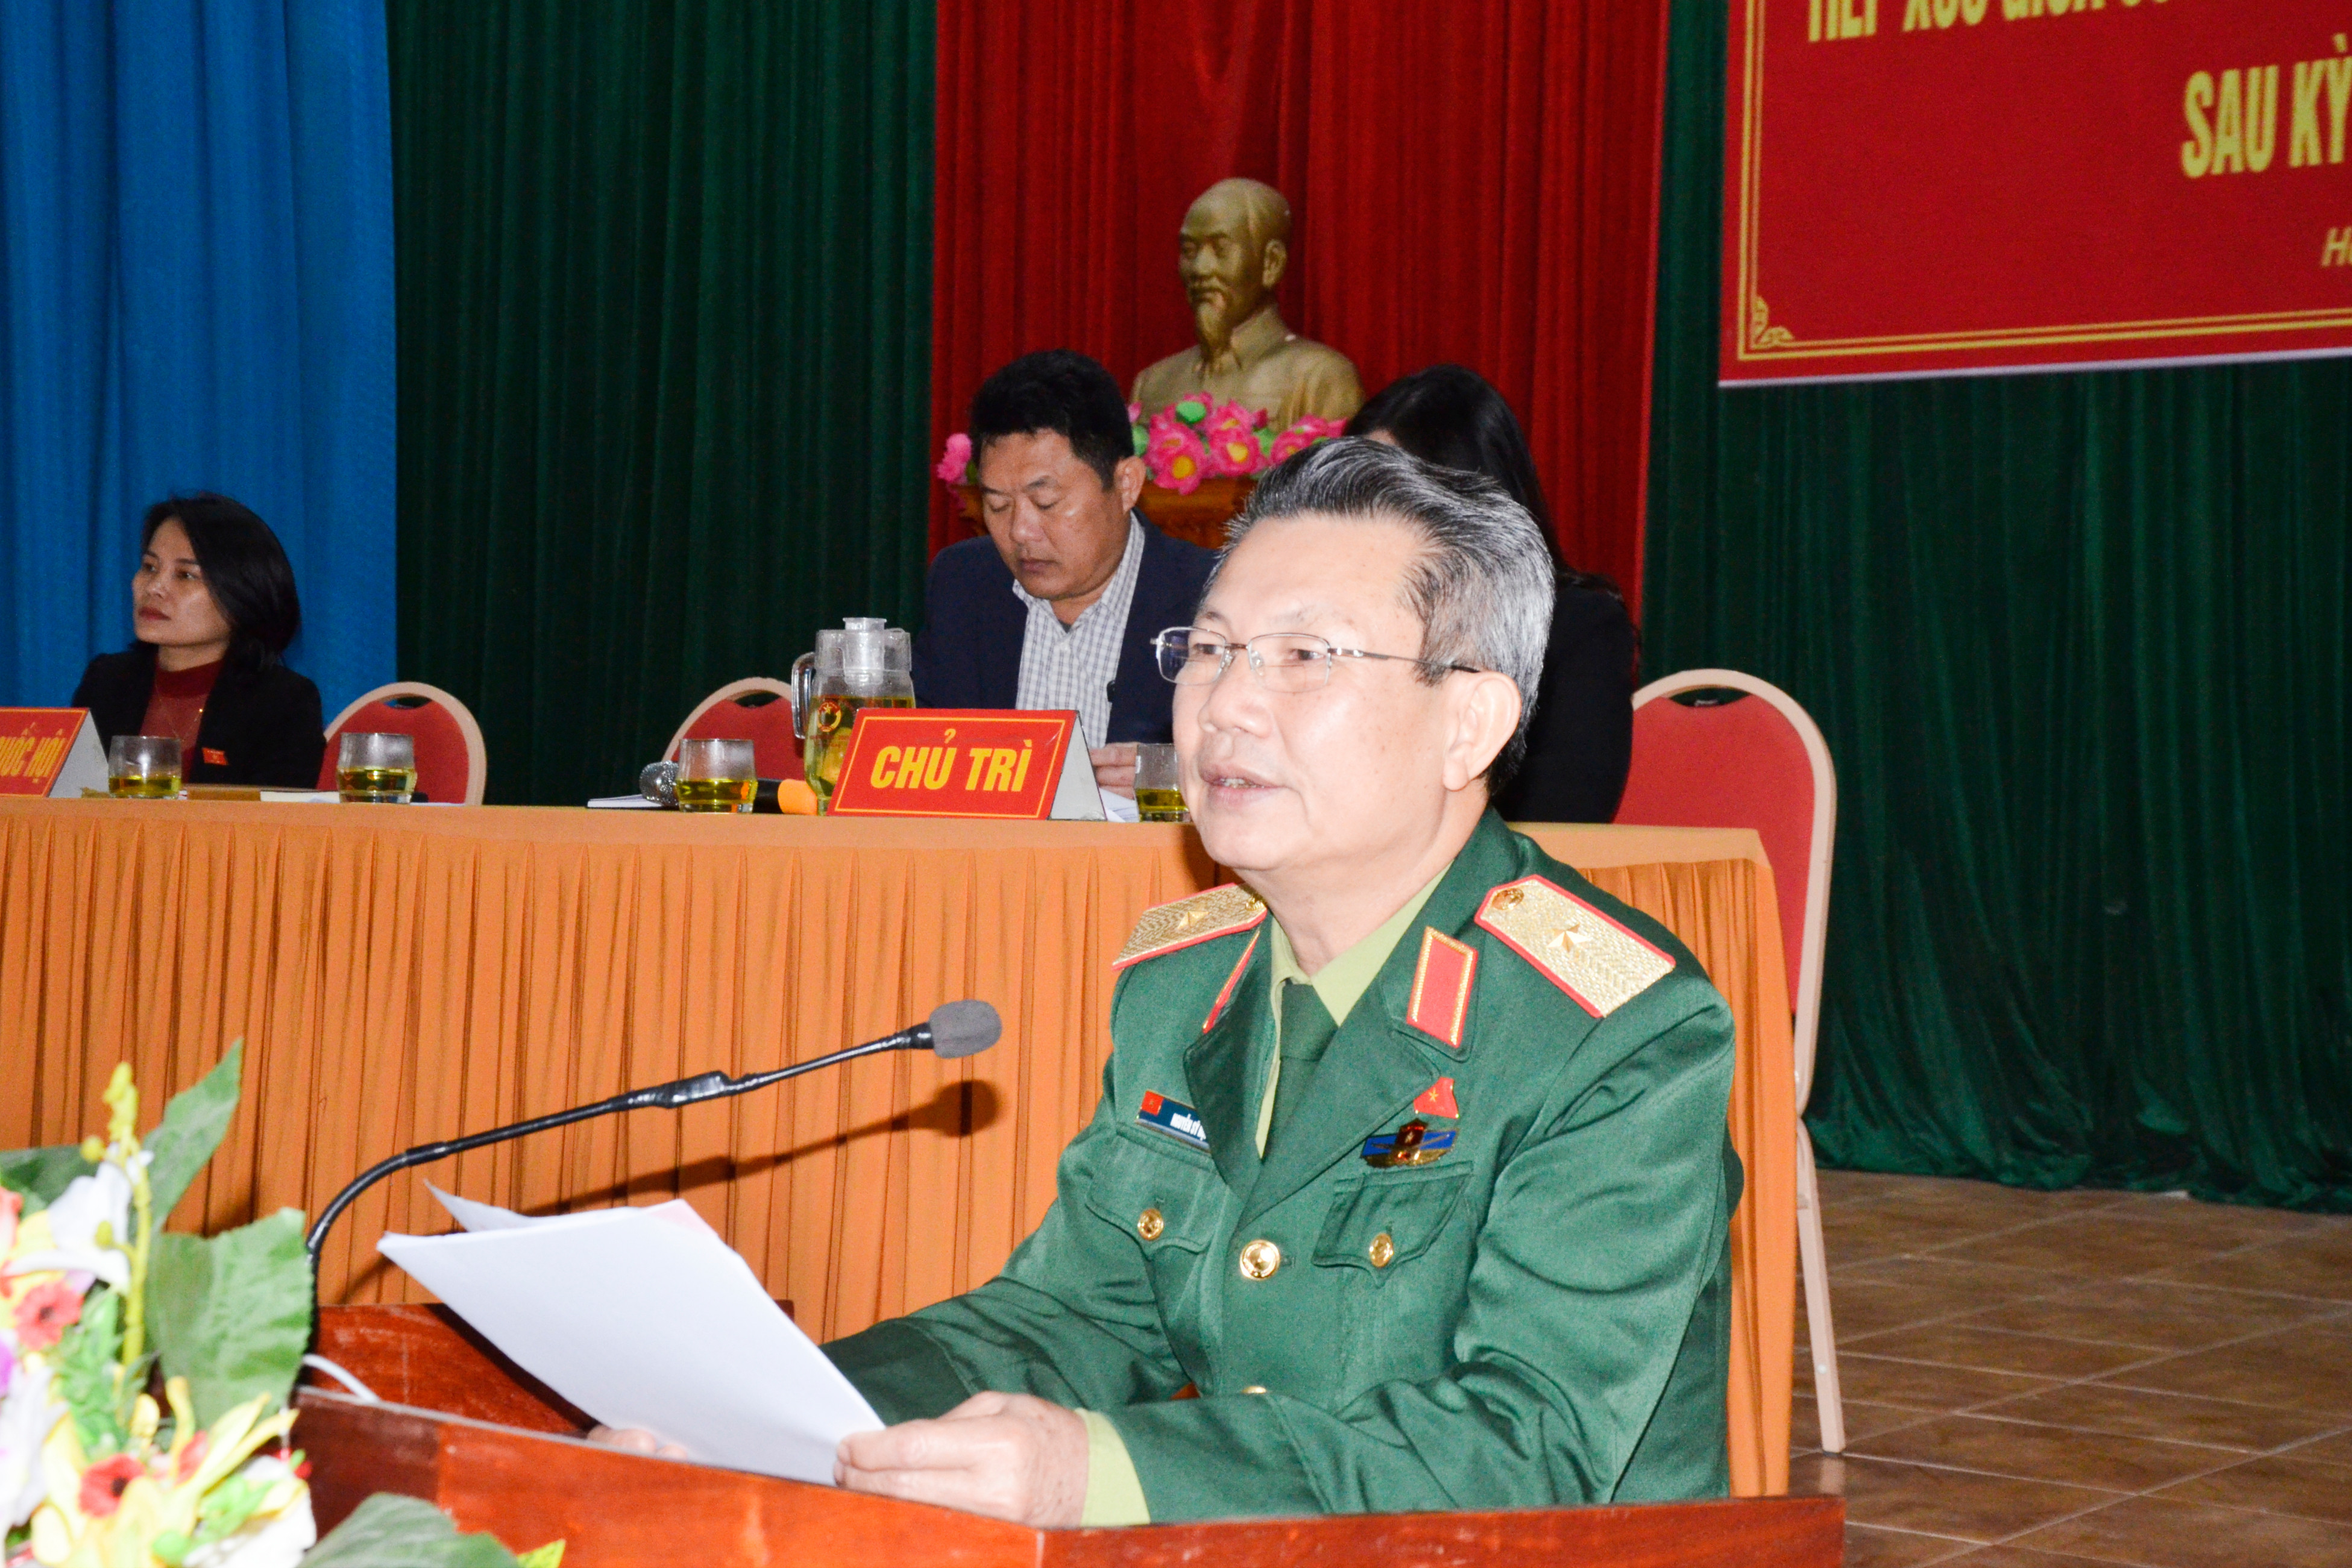 Thiếu tướng Nguyễn Sỹ Hội thông báo với cử tri kết quả  kỳ họp thứ 8, Quốc hội khóa XIV.  Ảnh: Thanh Lê